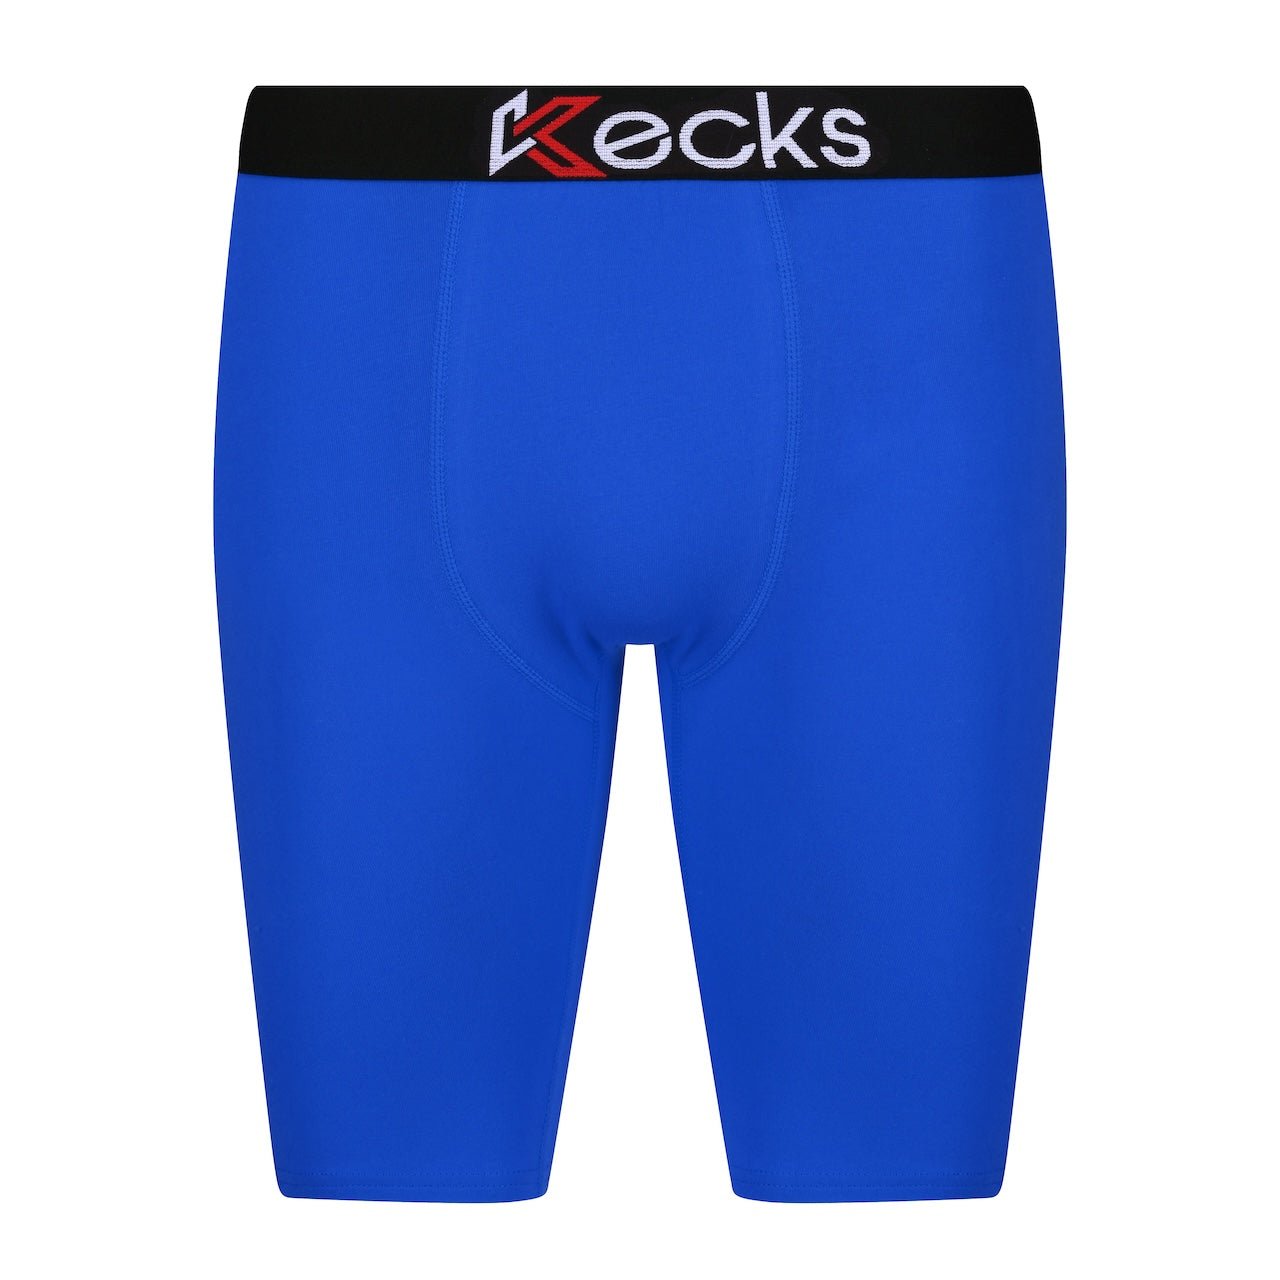 Blue Boxer Shorts - Kecks